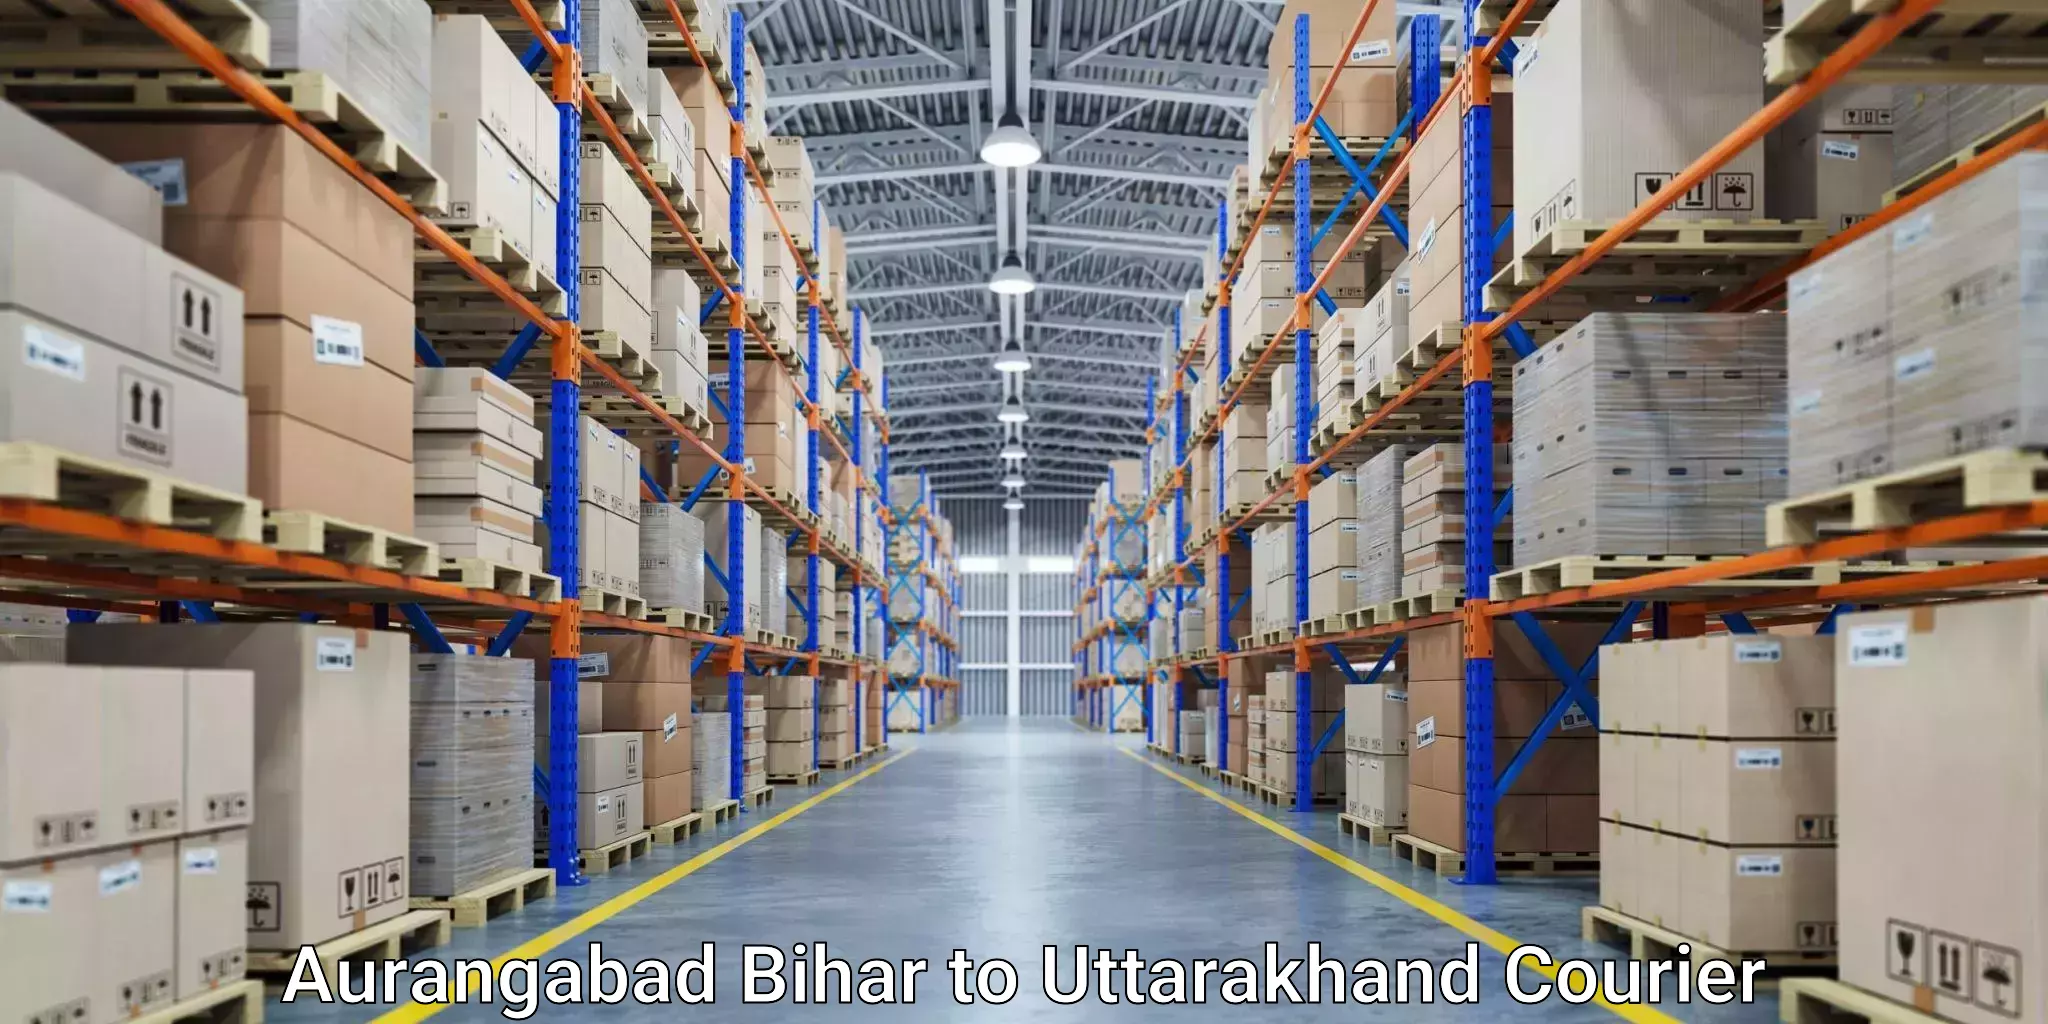 Modern courier technology Aurangabad Bihar to Karnaprayag